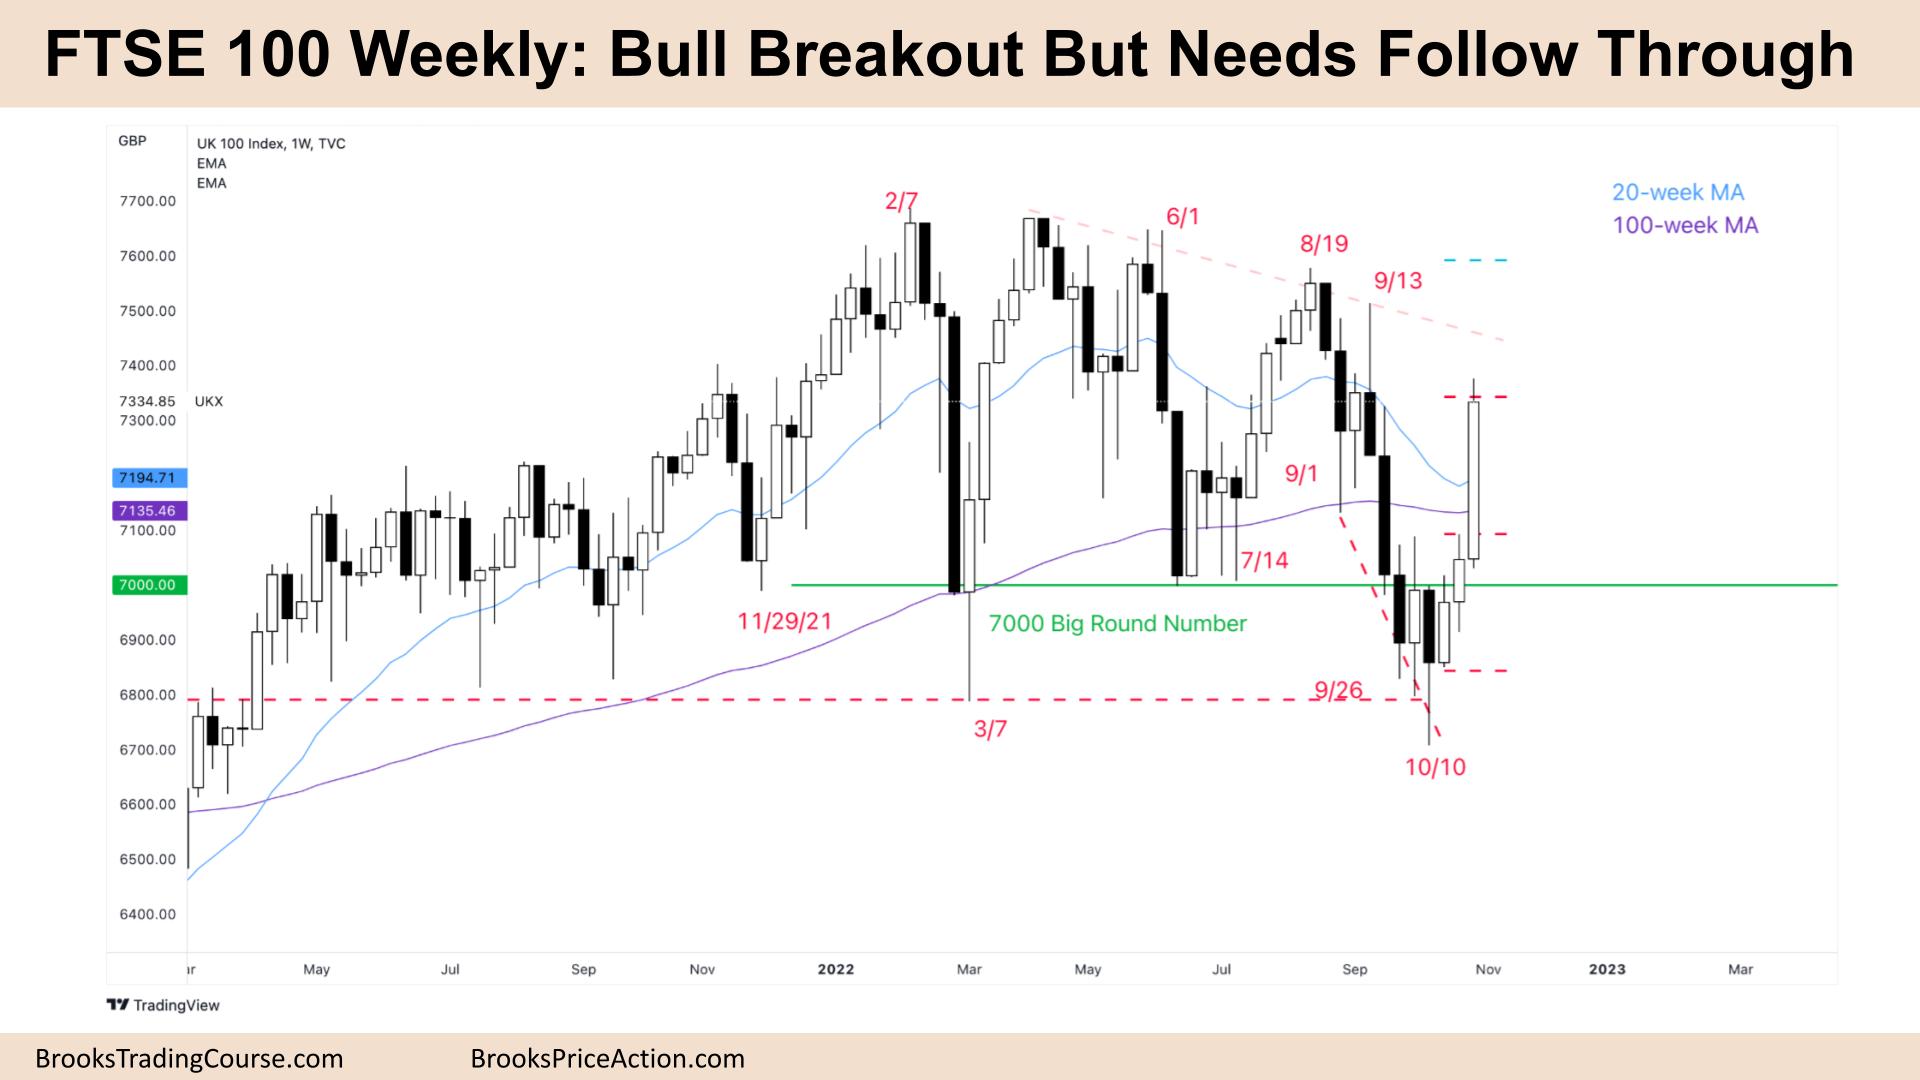 FTSE 100 Bull Breakout But Needs Follow Through